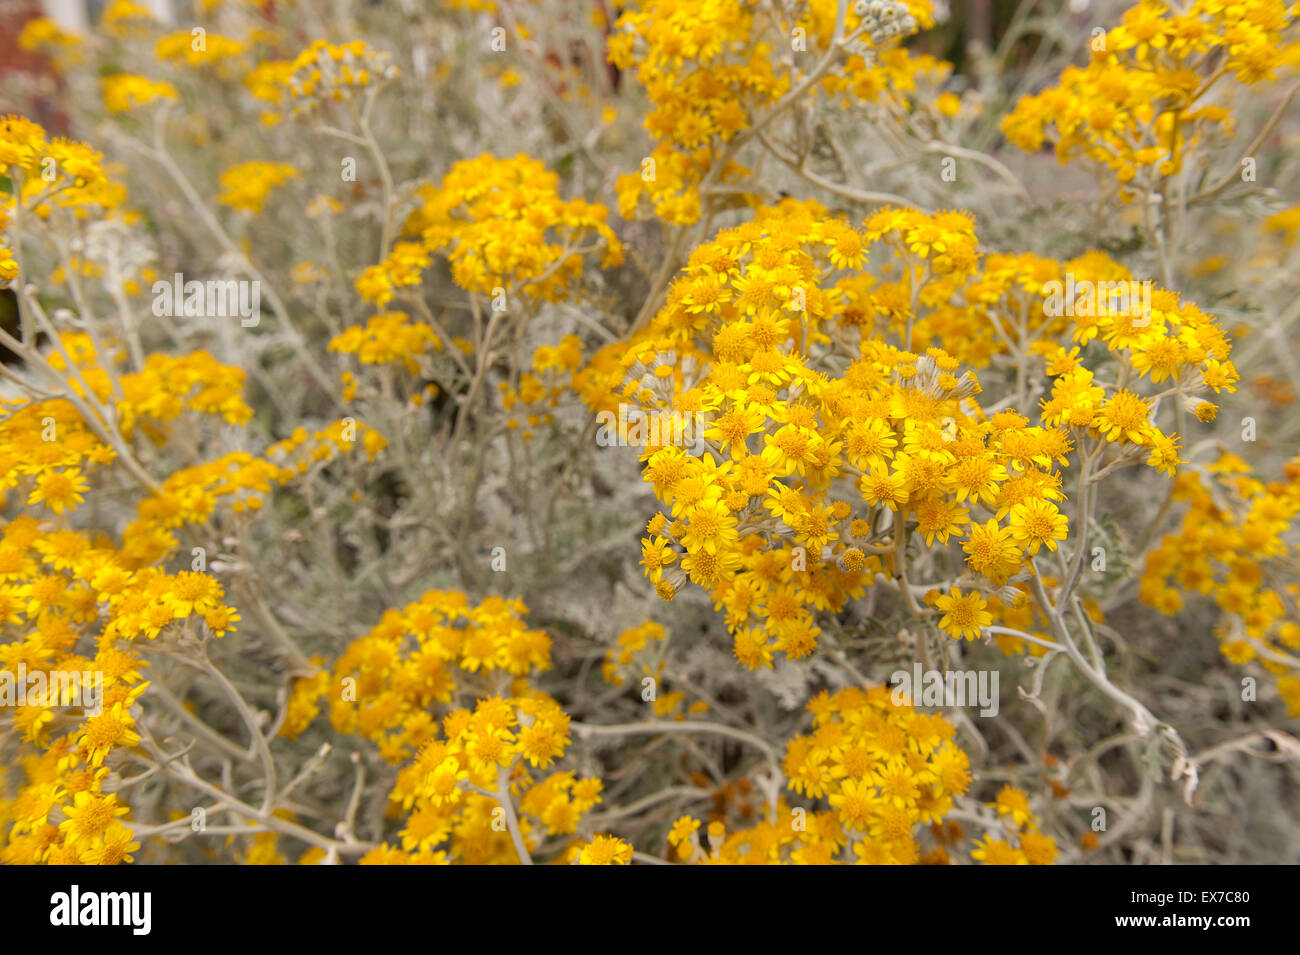 Une belle plante séneçon argent Dusty Miller, en pleine floraison de nombreuses fleurs jaune riche Jacobaea Senecio Cineraria Maritima Banque D'Images